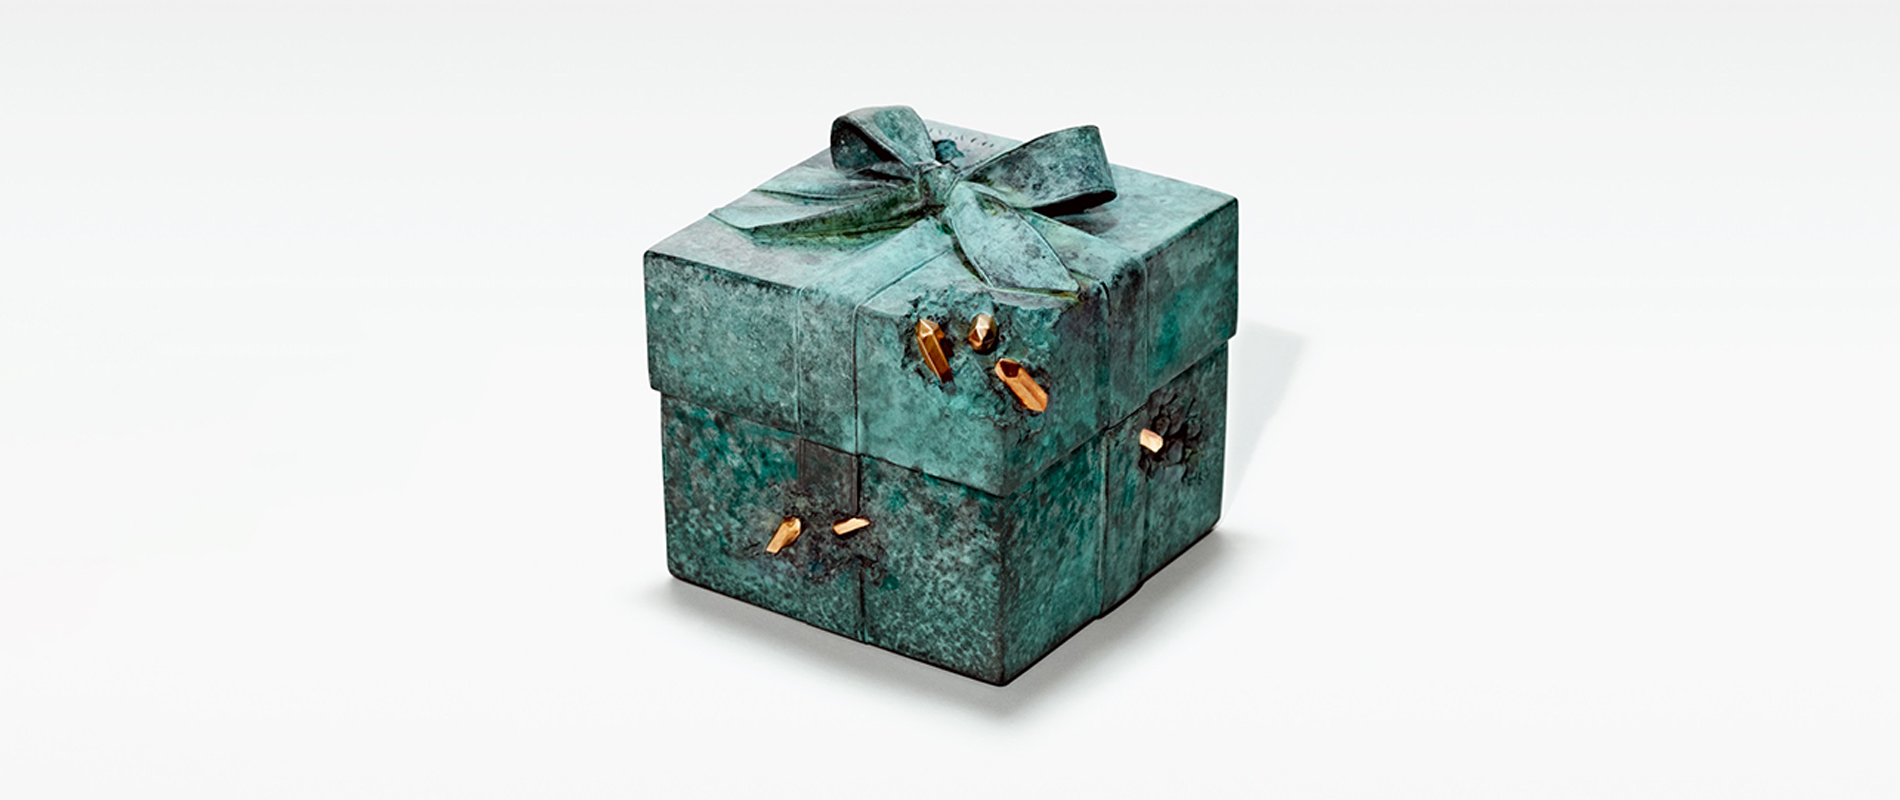 The Tiffany Blue Box®